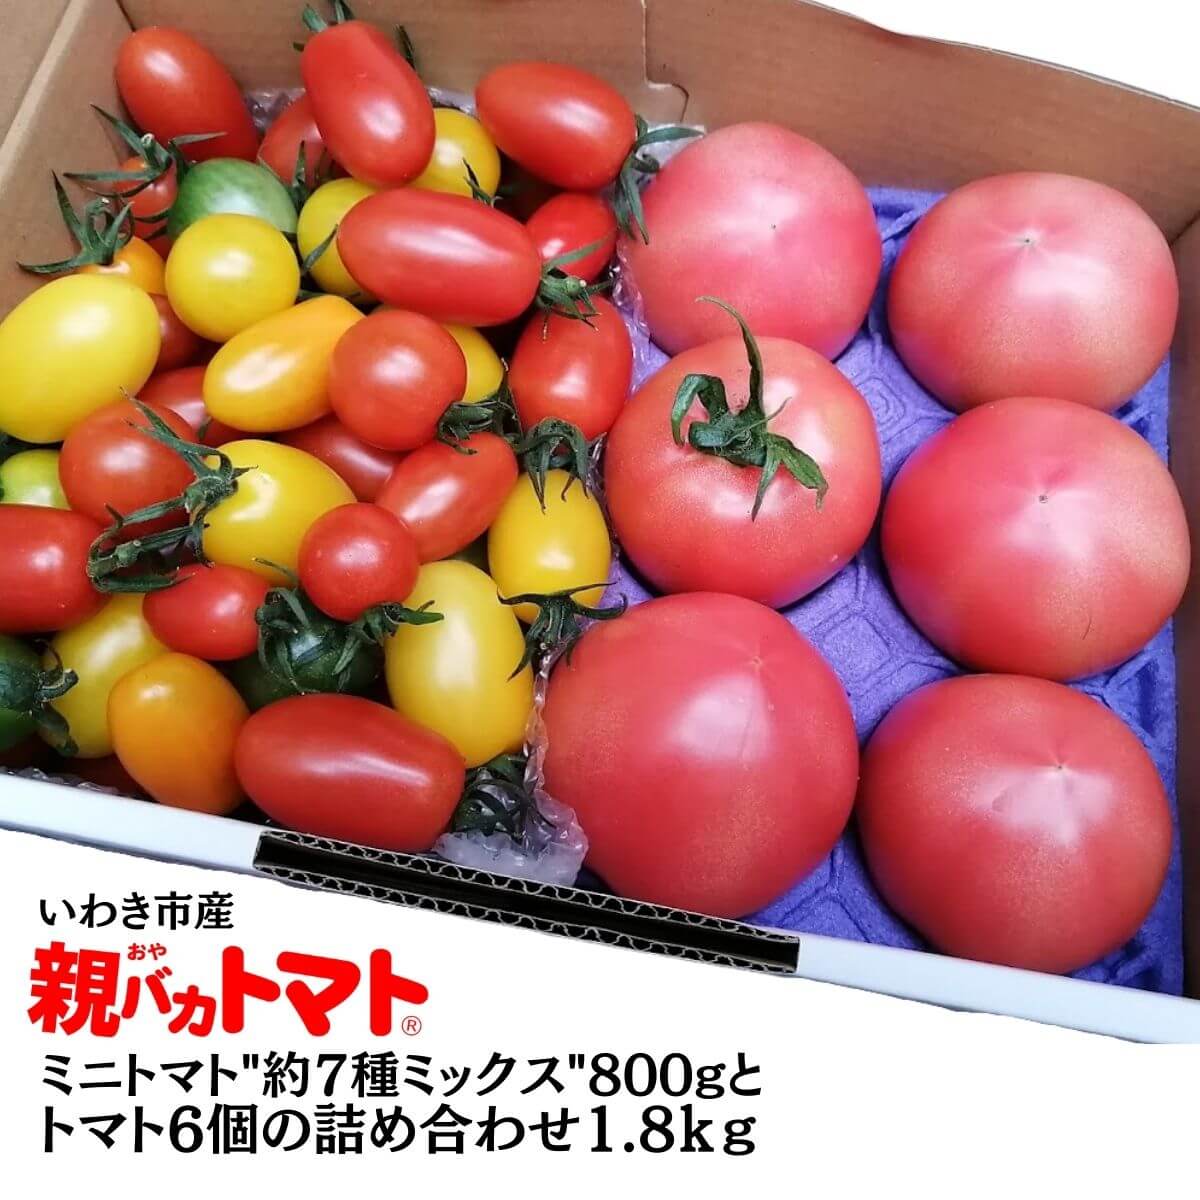 メーカー直送 ニコニコ農園のミニトマト アイコ en-dining.co.jp